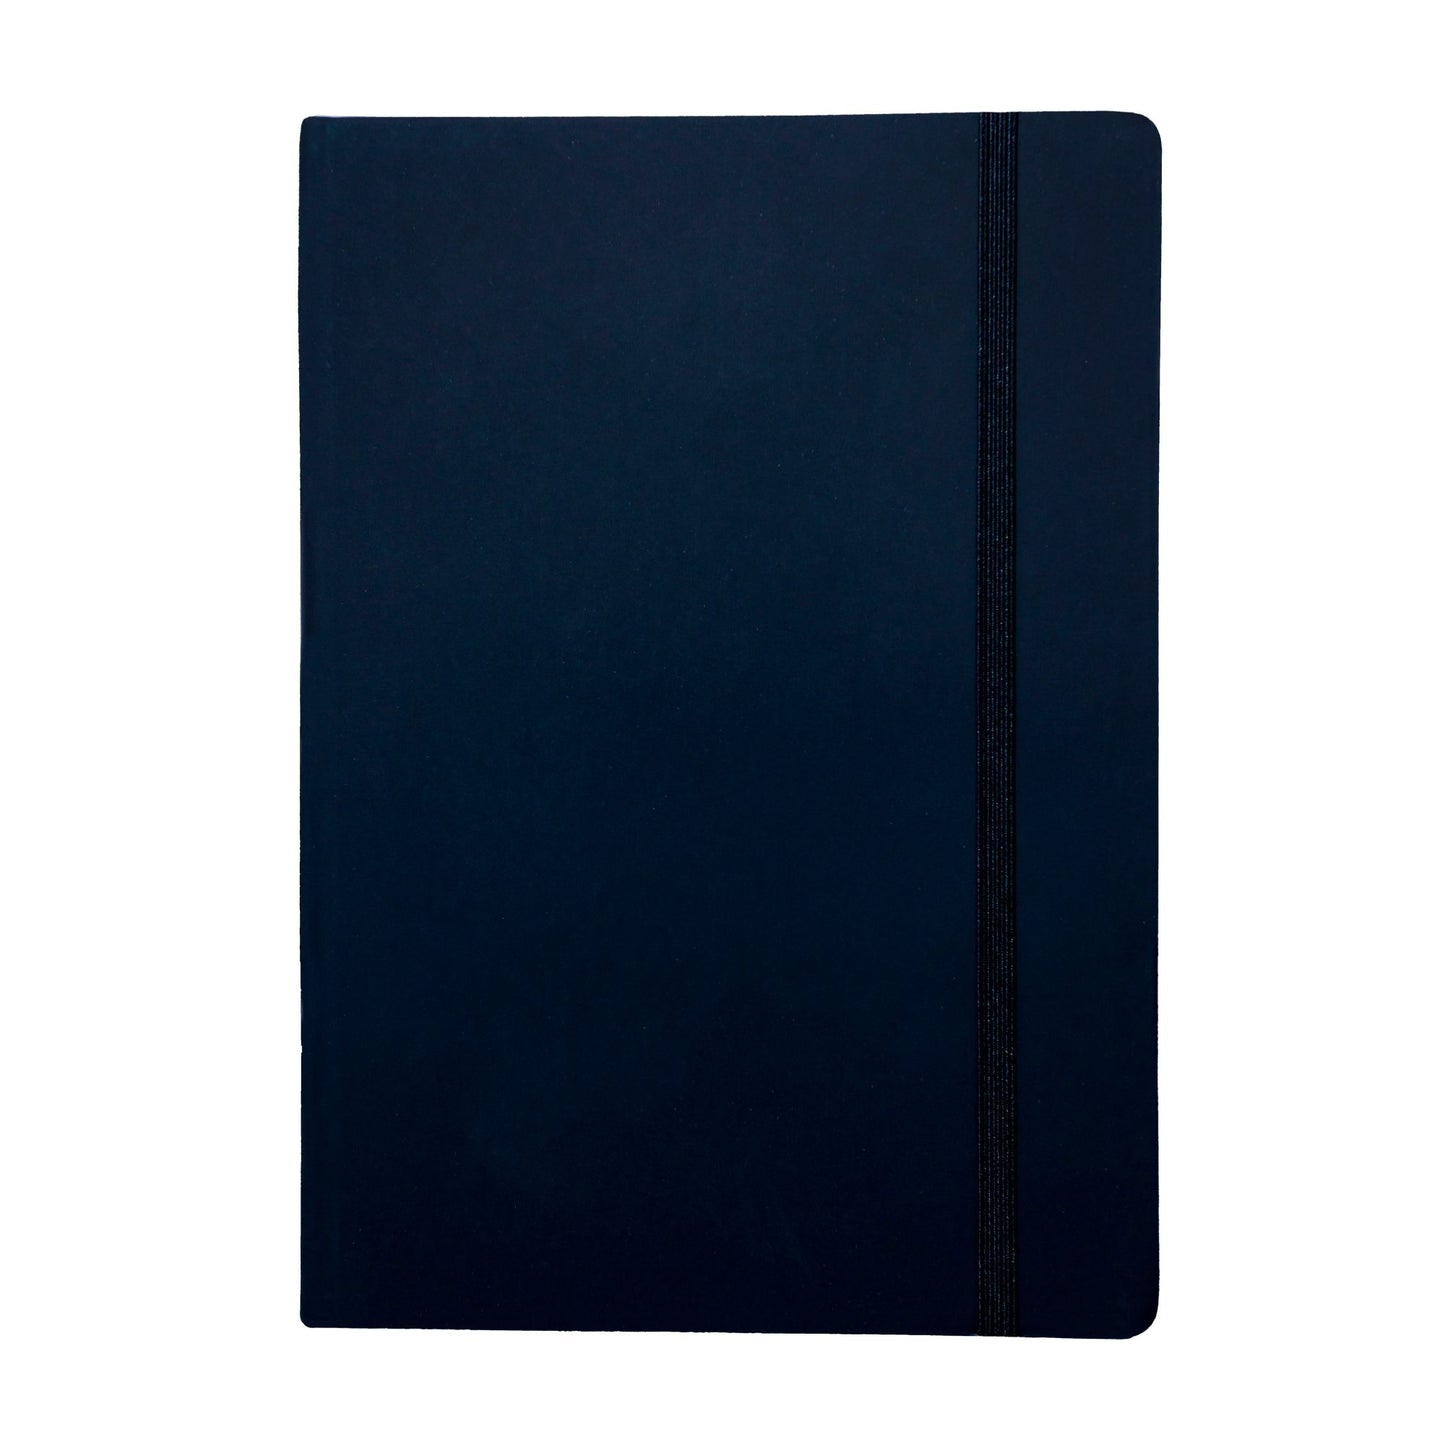 Premium Quality Notebook